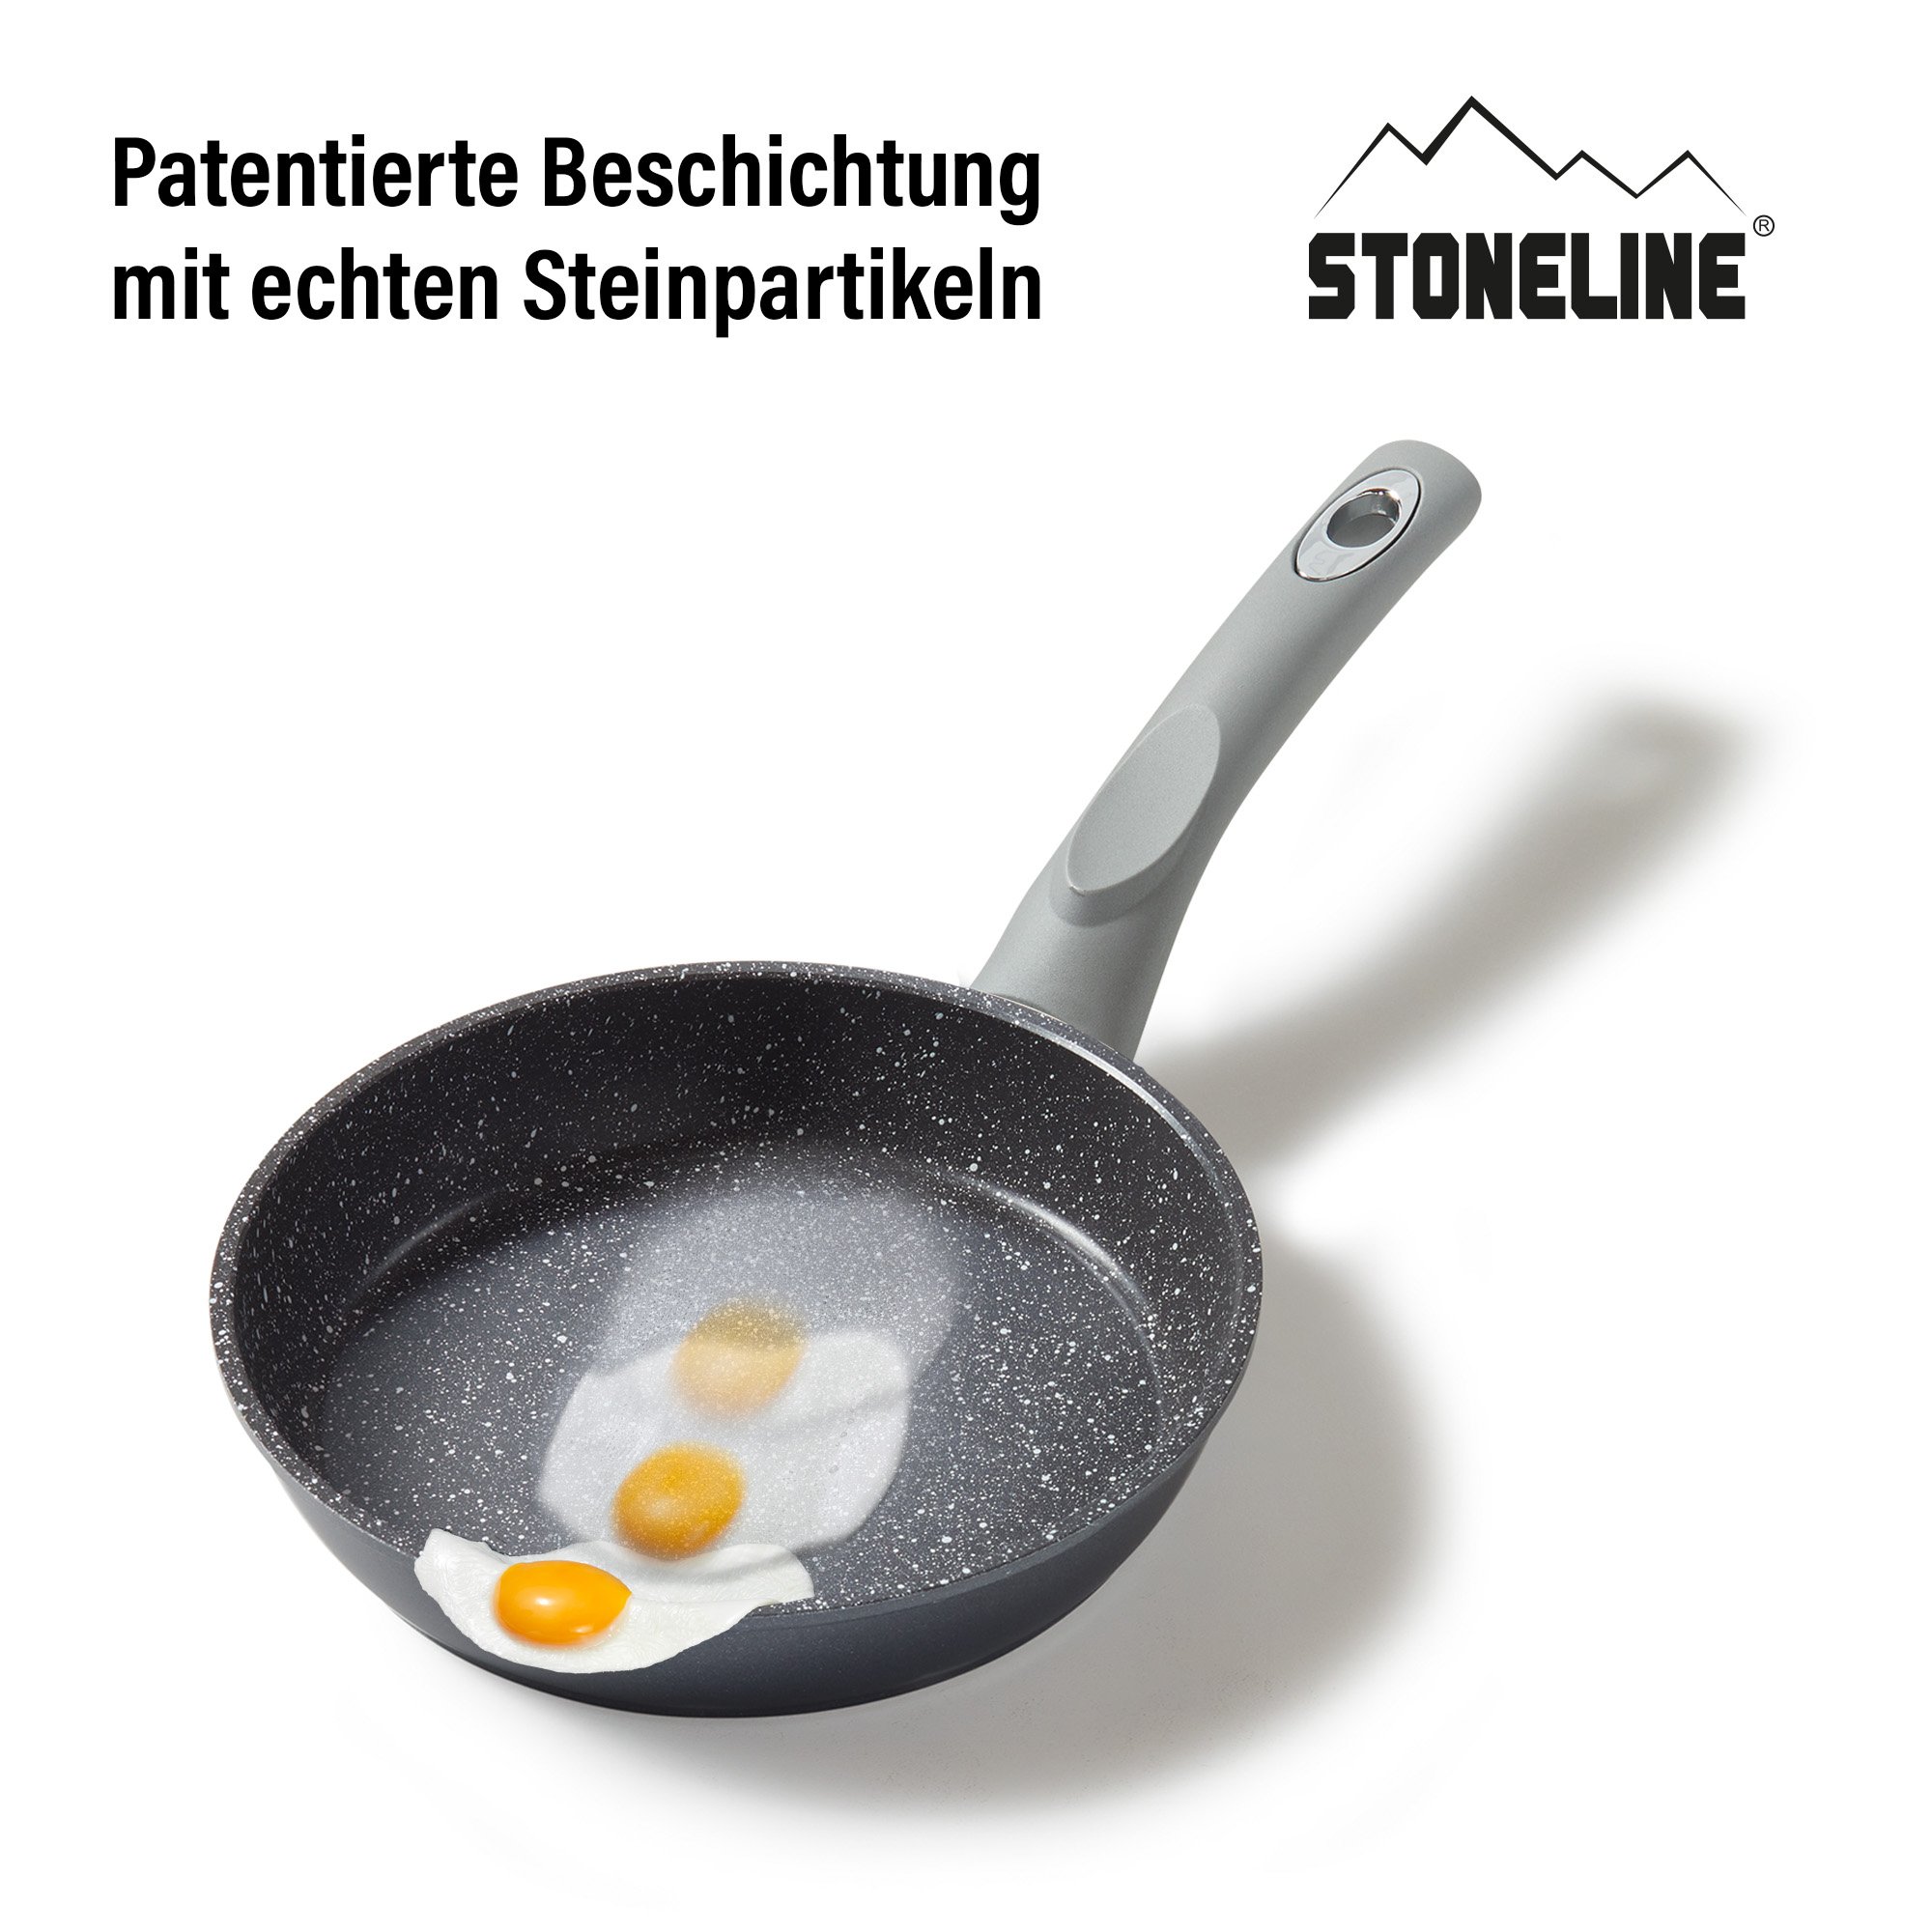 STONELINE® Gourmundo sartén 18 cm, aluminio fundido con revestimiento antiadherente, apta para inducción